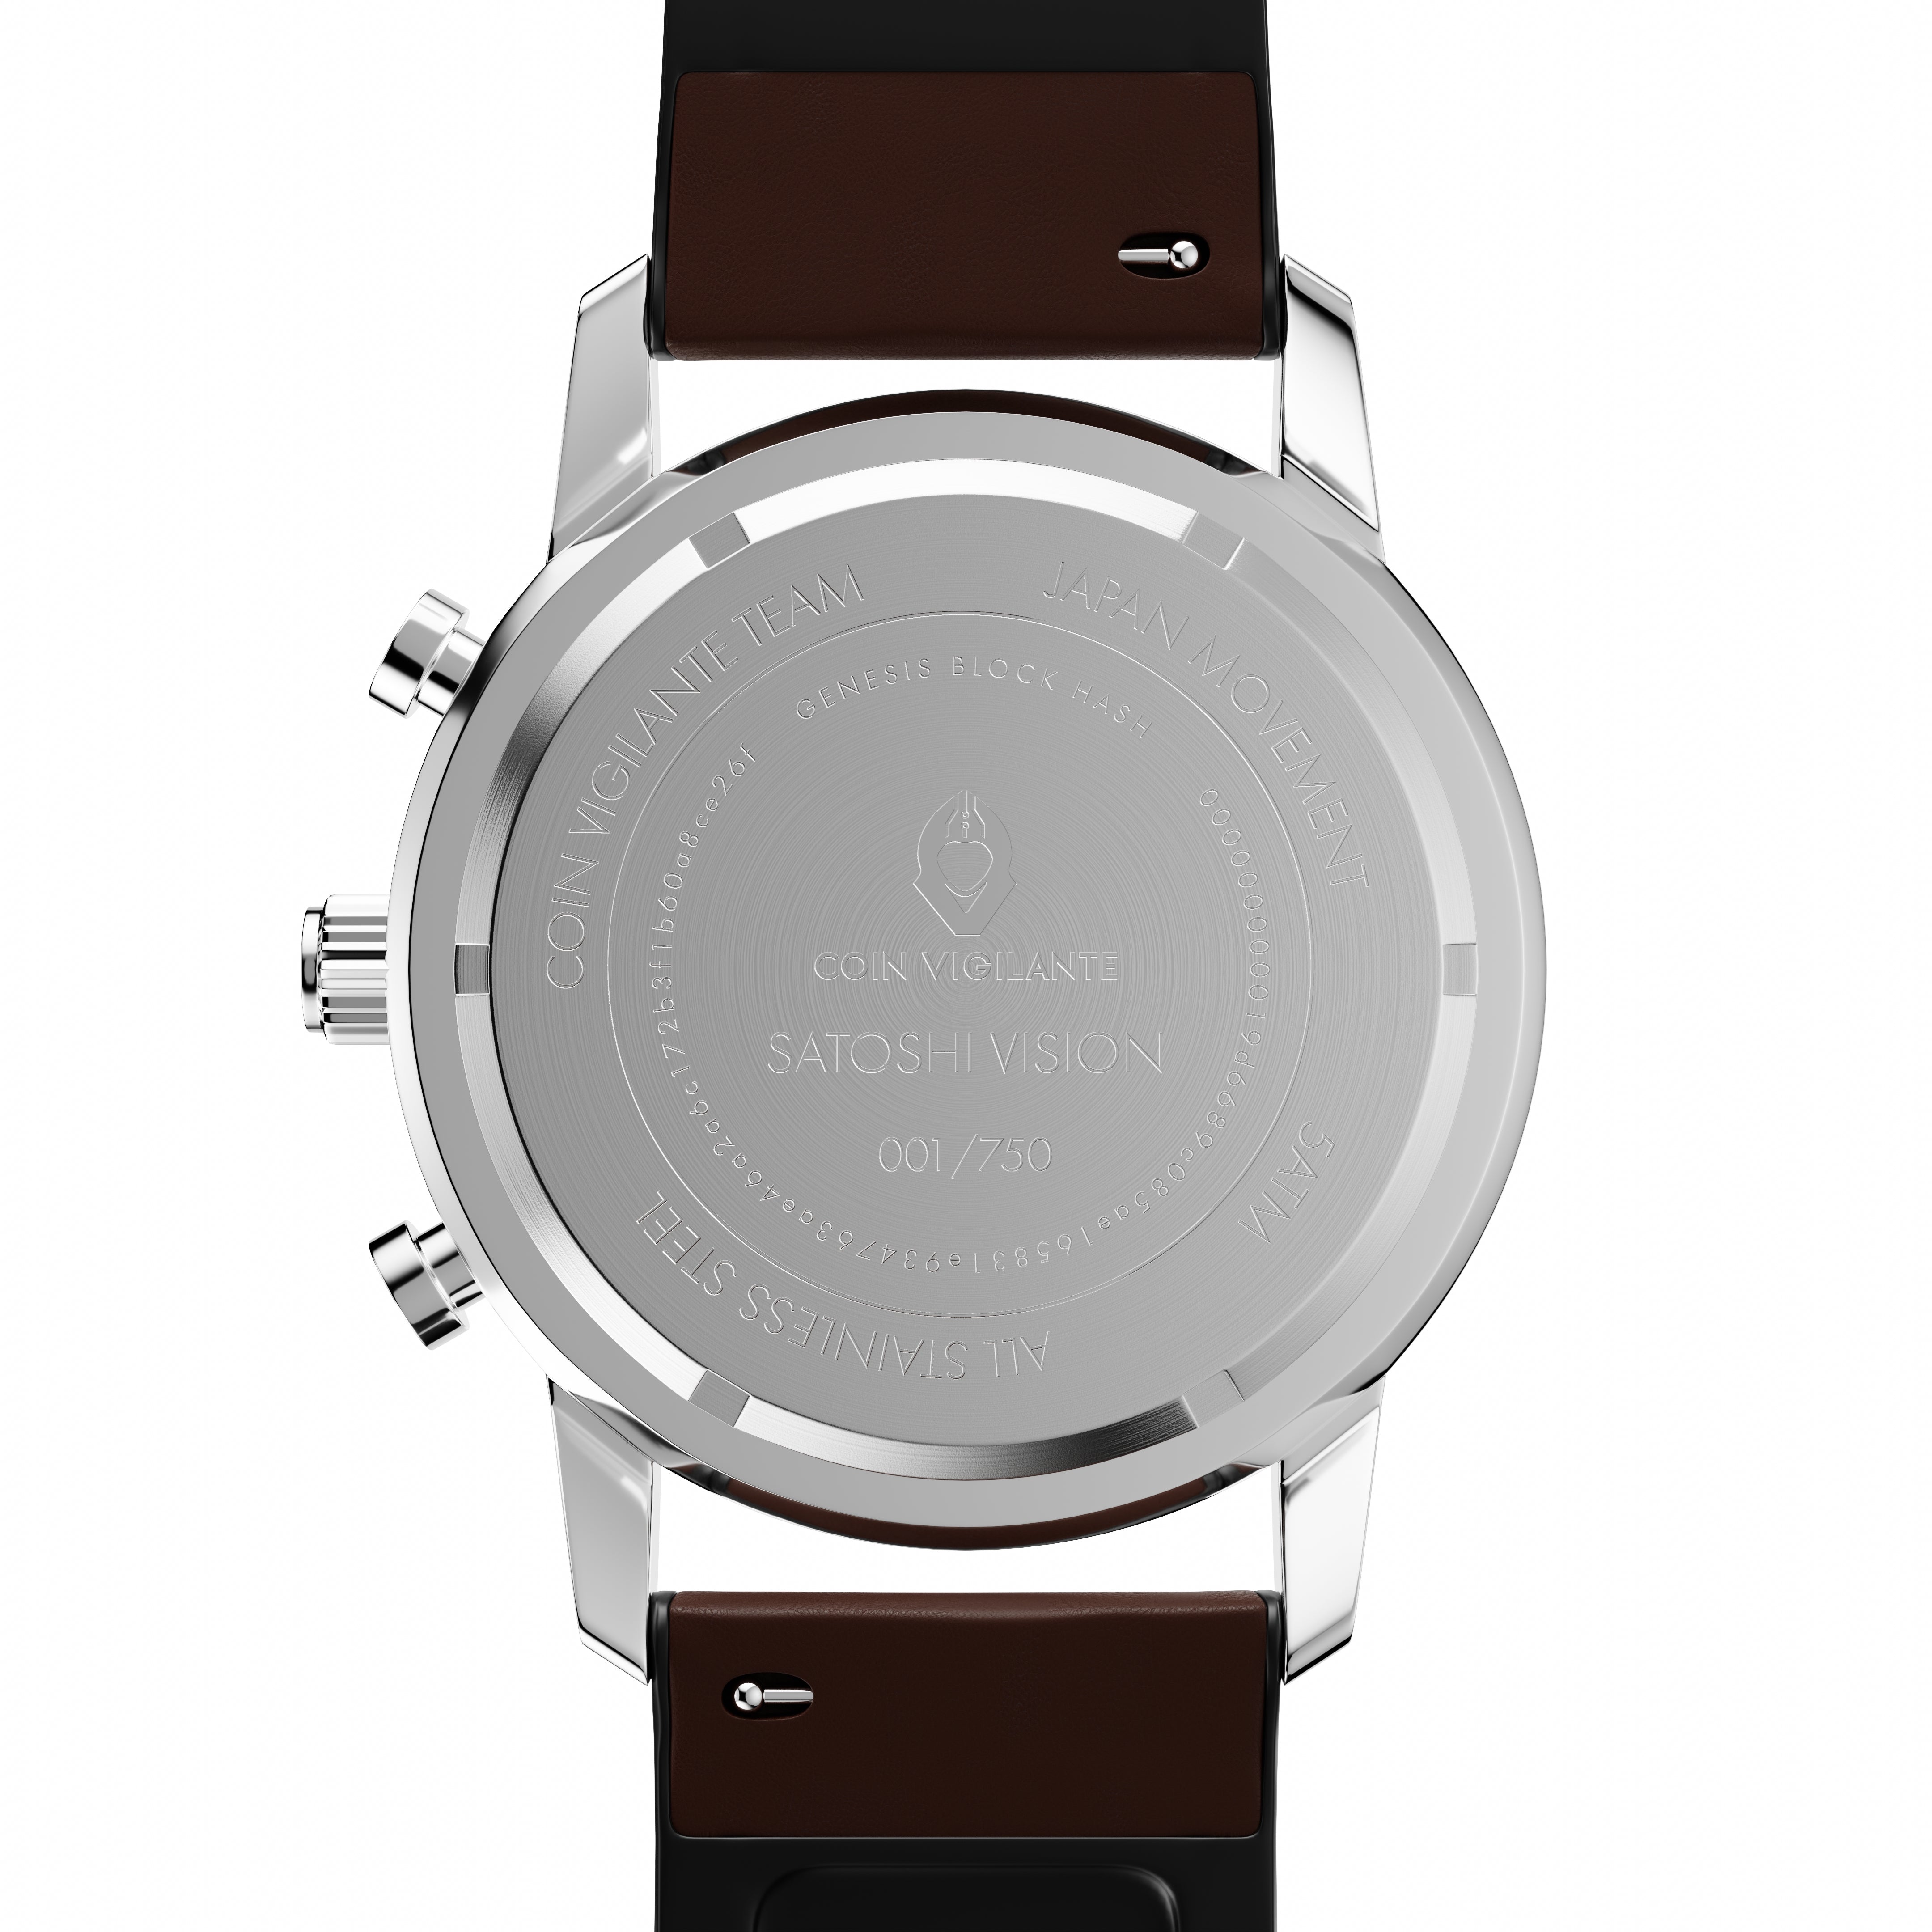 Coin Vigilante Bitcoin Watch Model B - Limited Edition, Scarce, Unique